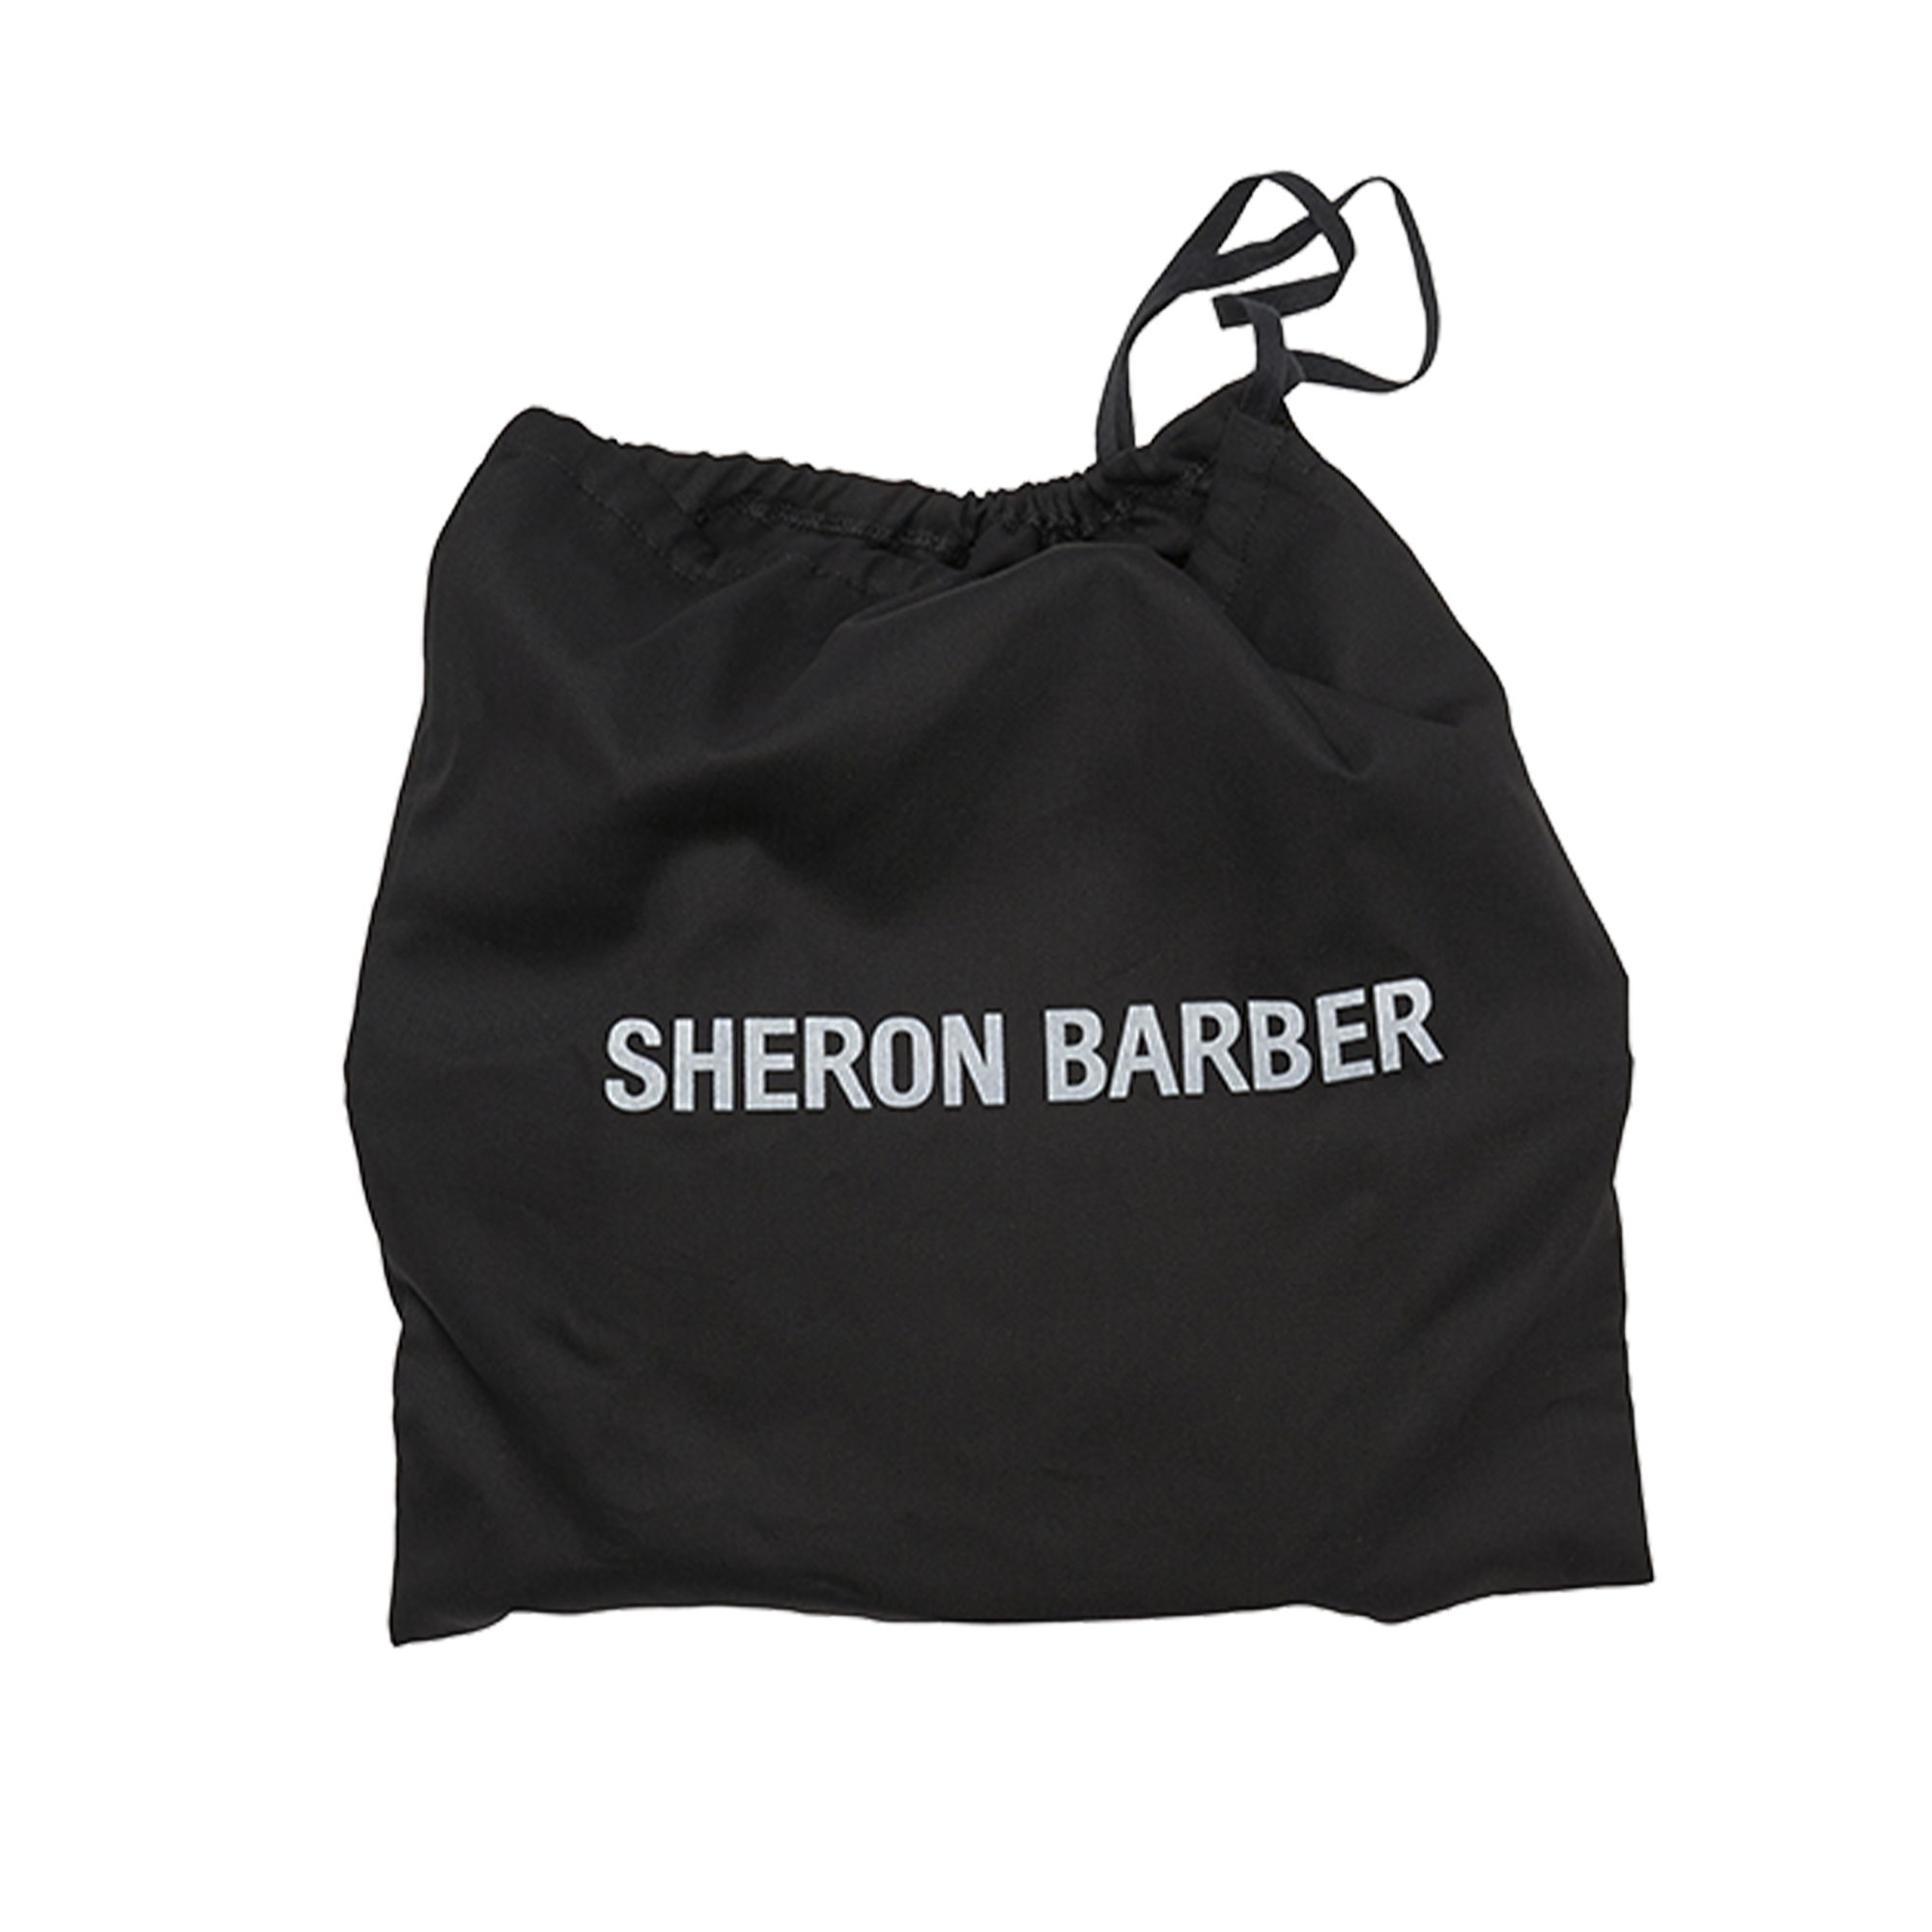 sheron barber mickey bag